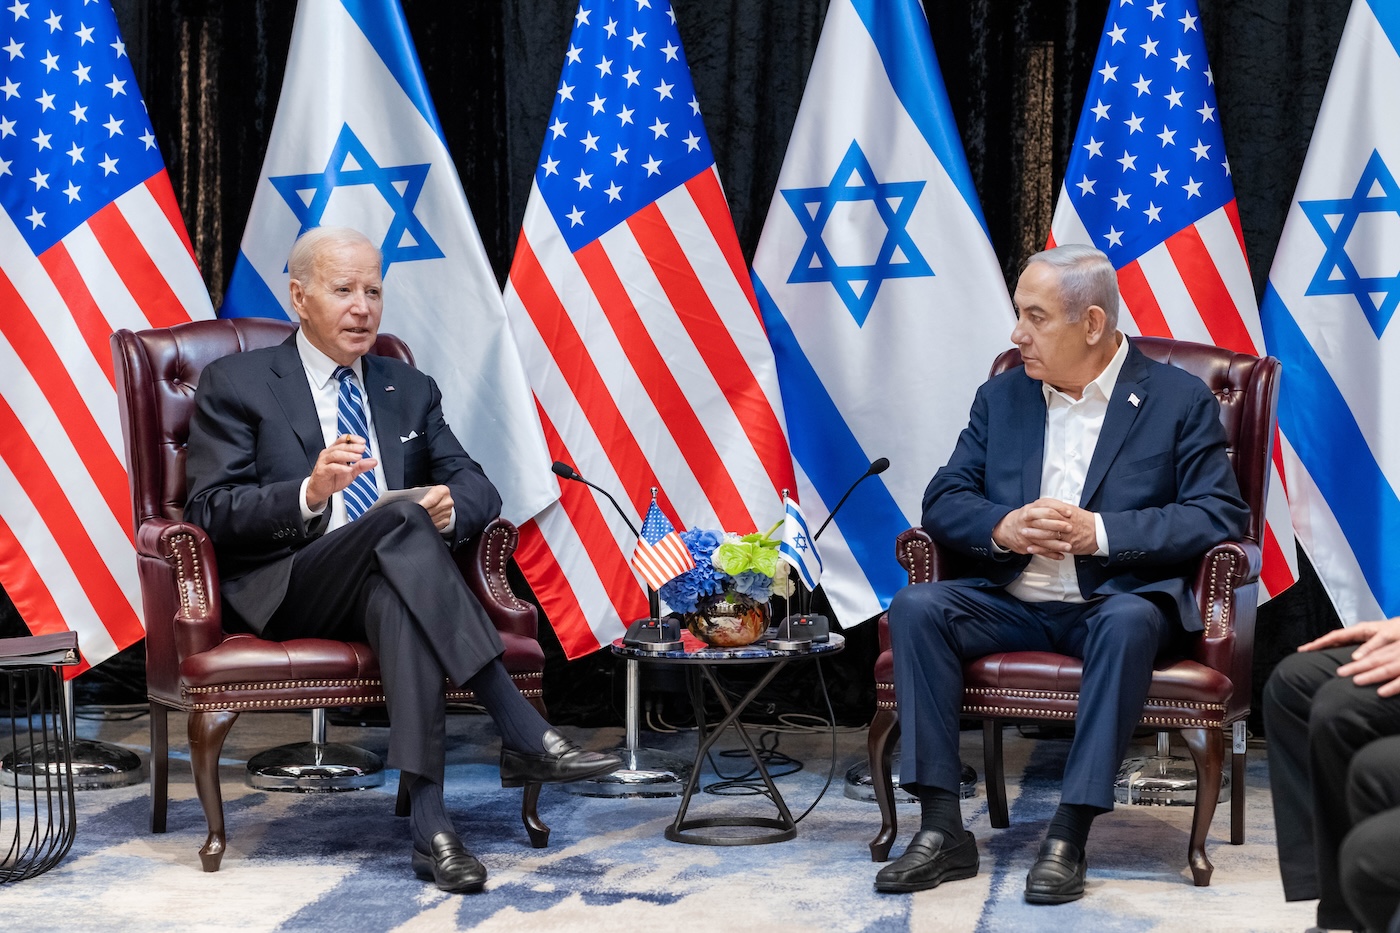 Biden’s Veto Threat Puts Israeli Aid at Risk